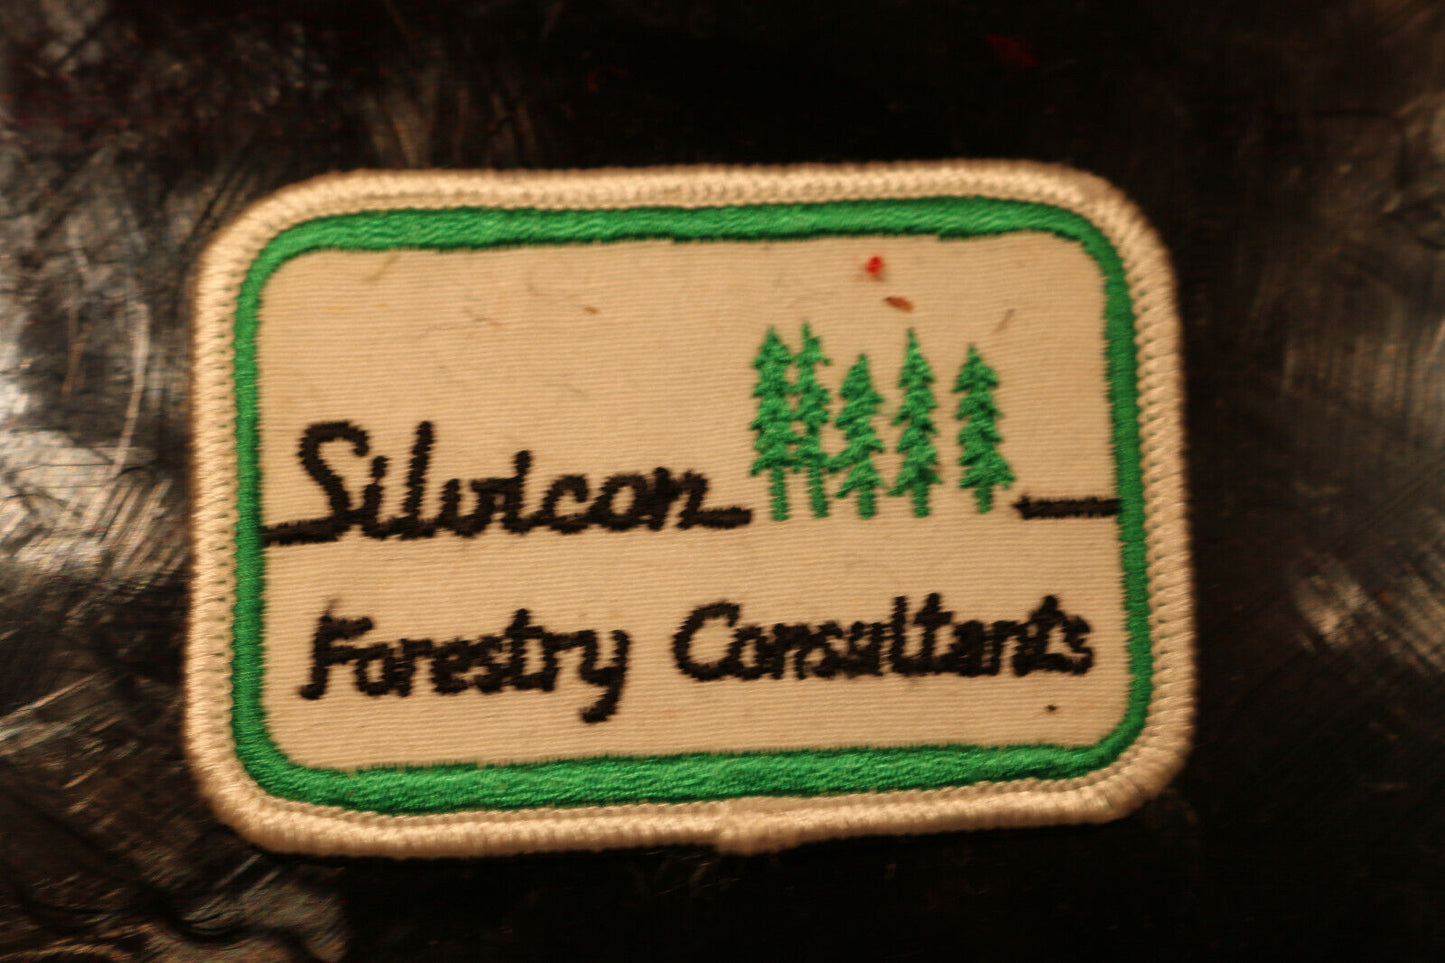 Vintage Shoulder Patche Souvenir Silvicon Foresty Consltants